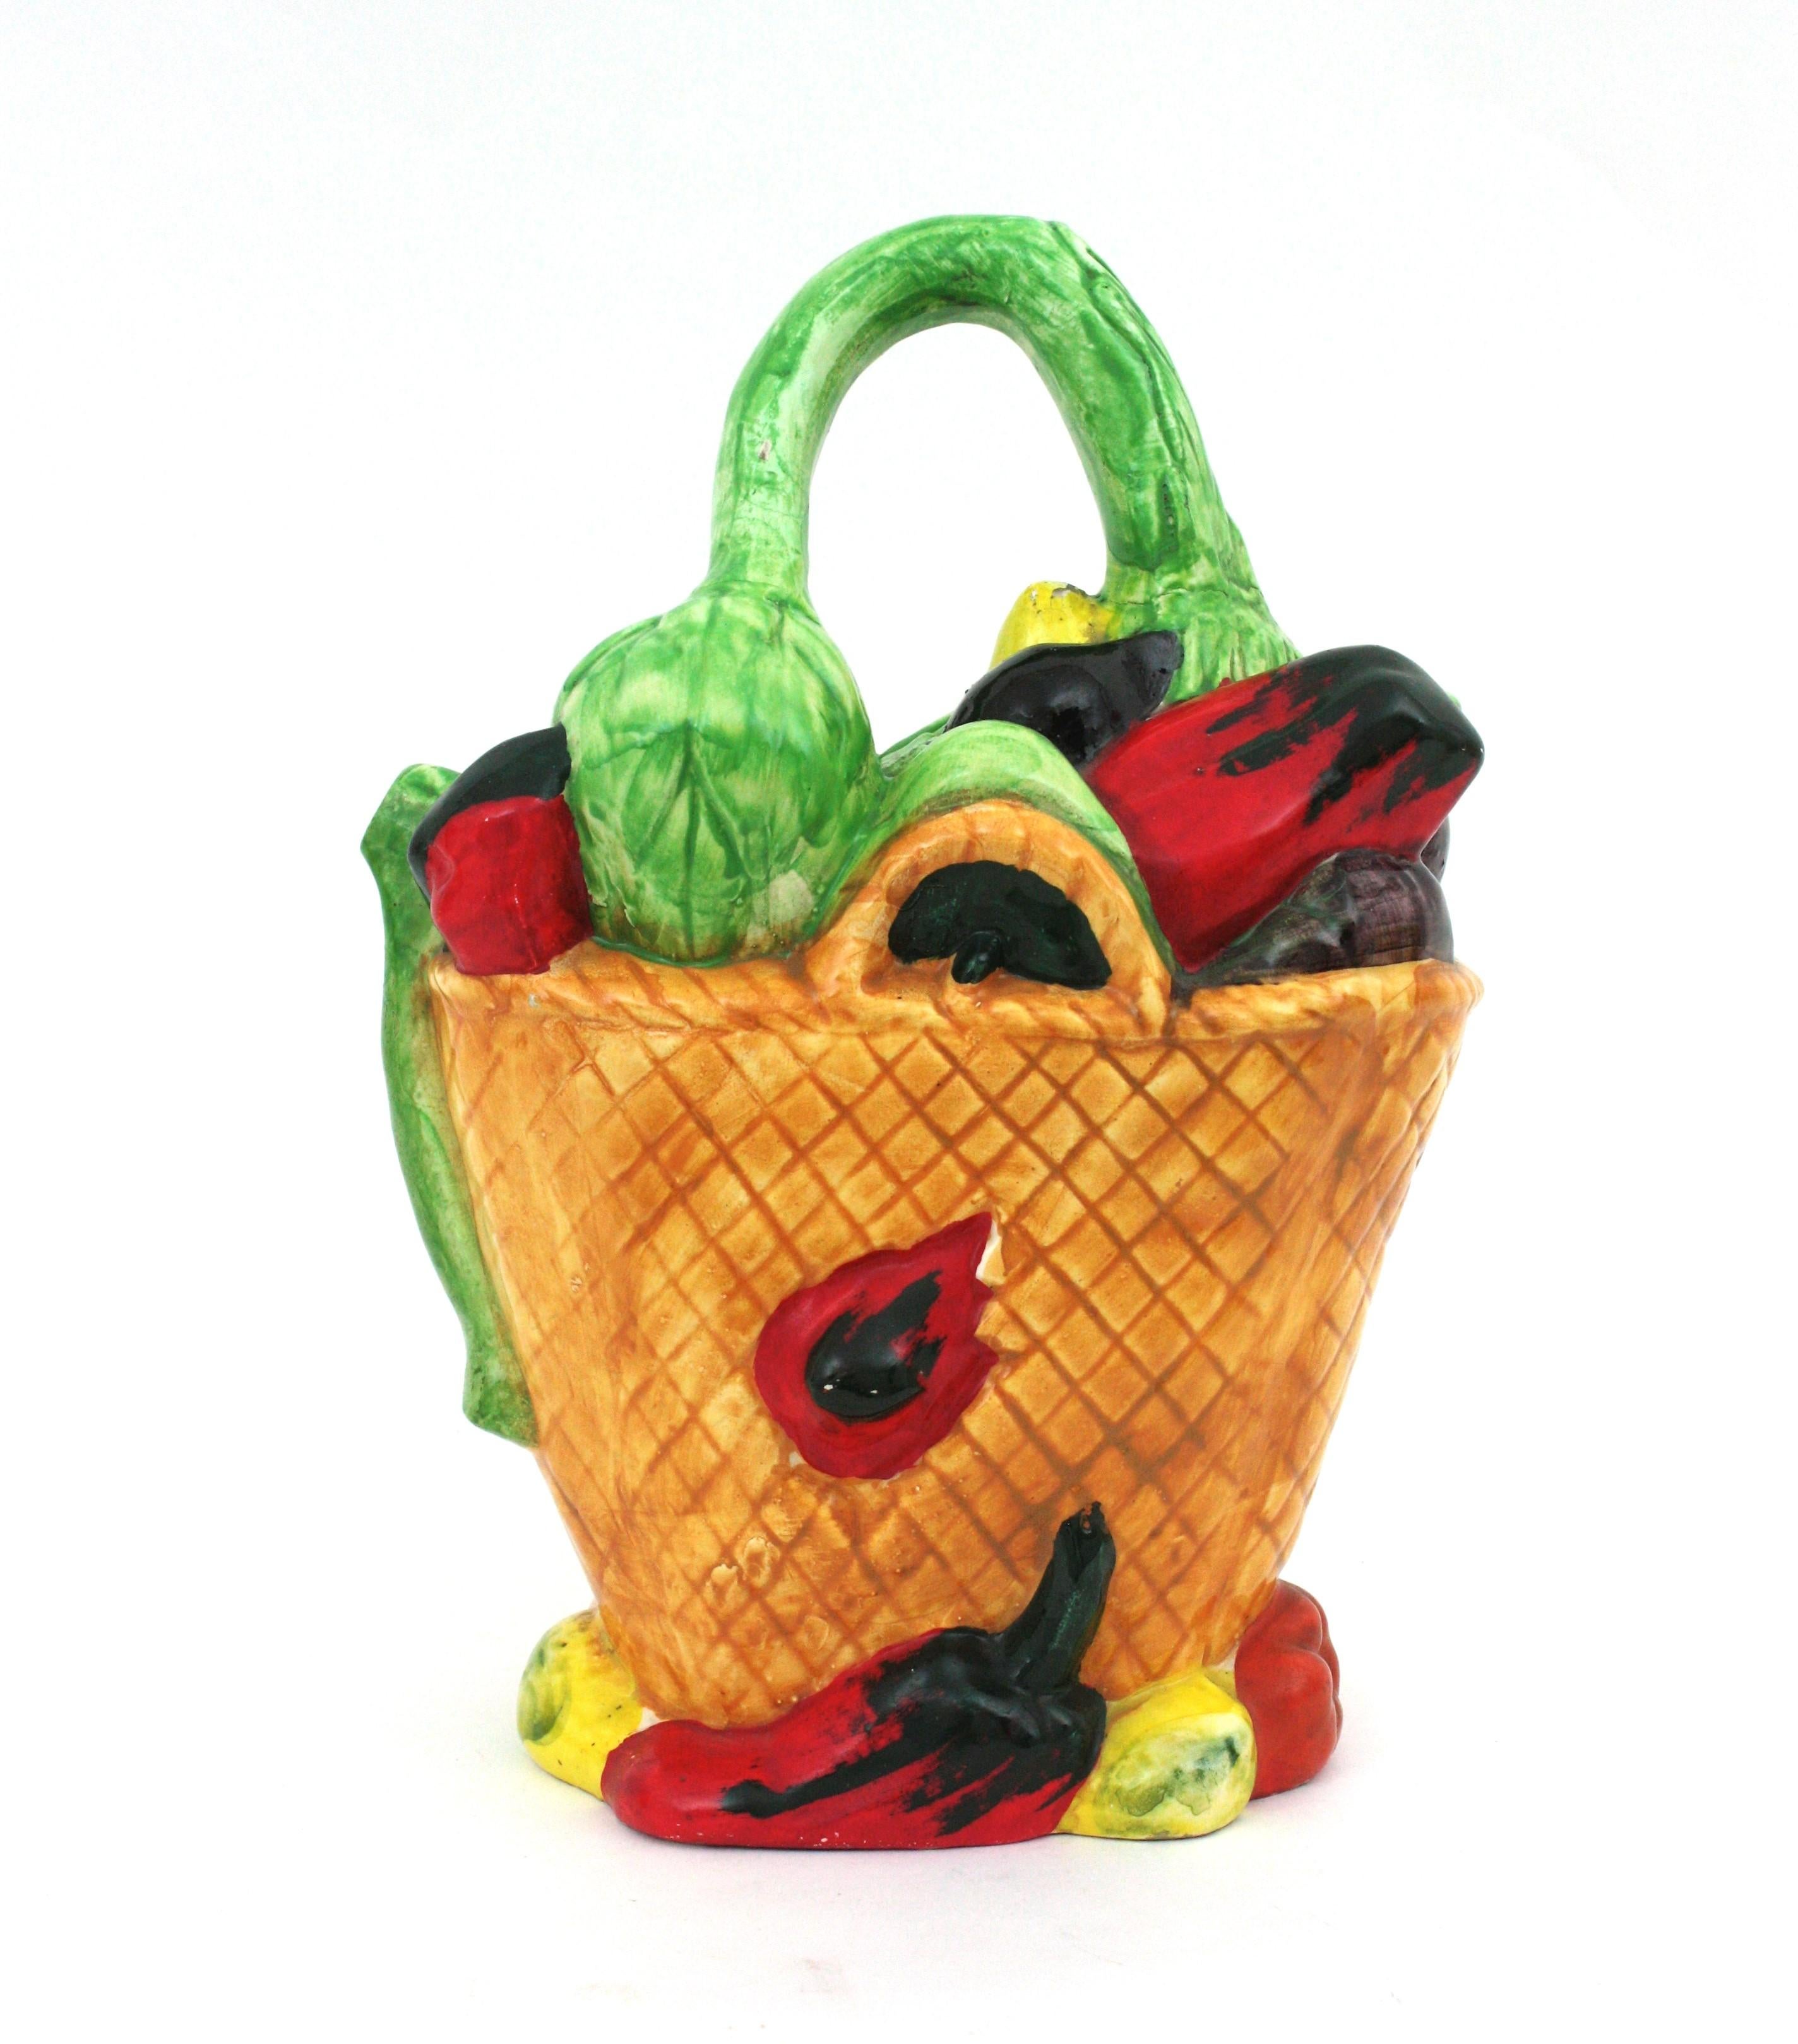 Auffallend realistischer Majolika-Gemüsekrug aus mehrfarbig glasierter Keramik,  Spanien, 1950er-1960er Jahre.
Handbemalte dekorative Manises-Keramikkanne in Form eines Gemüsekorbs
Ein cooler Akzent für jede Küche oder als Servierkrug oder zu